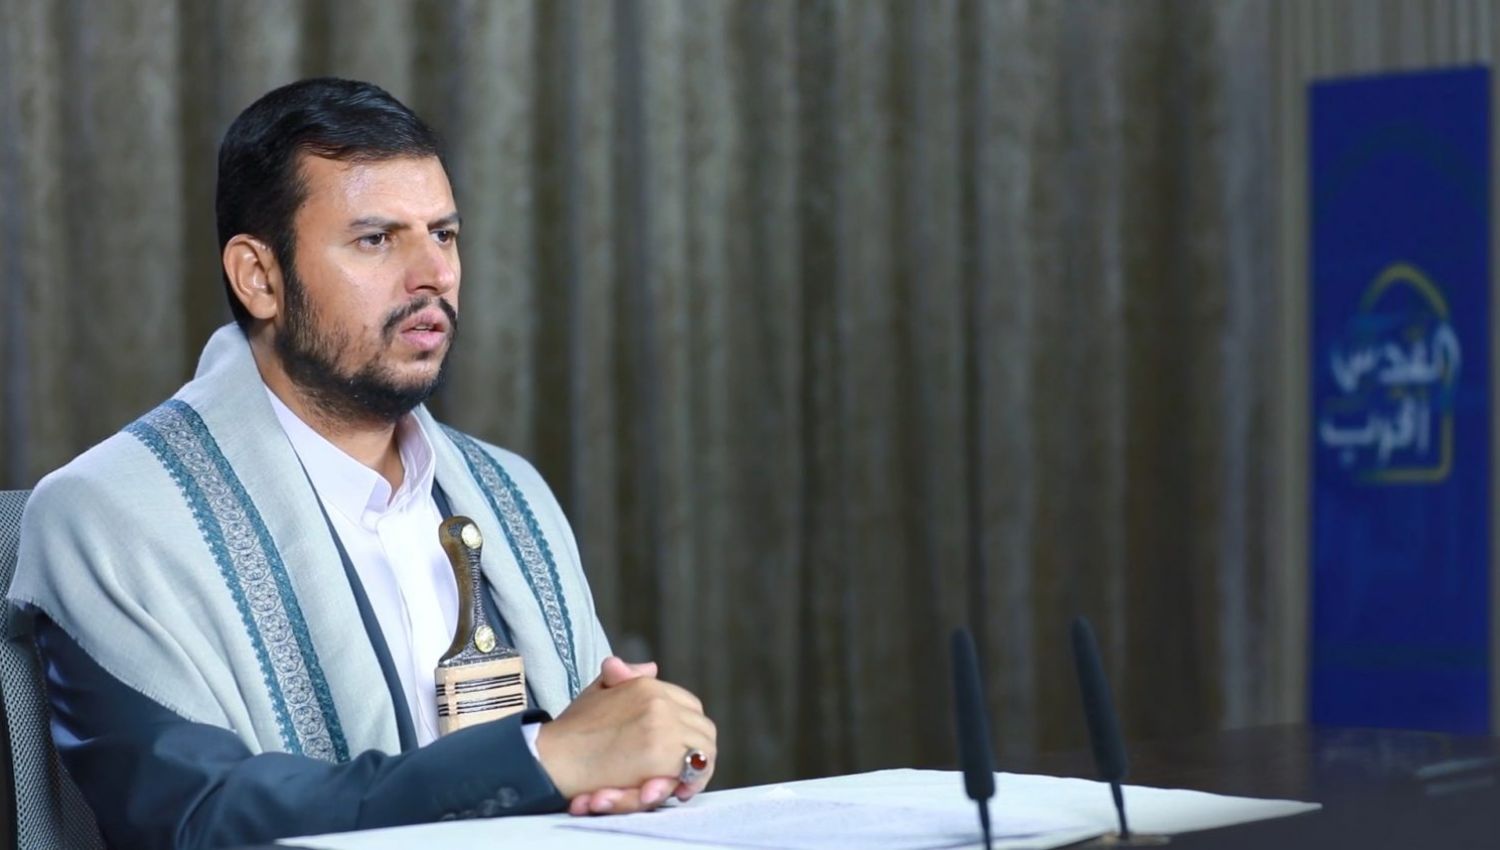 السيد الحوثي للسعودية: أفرجوا عن معتقلي حماس لديكم